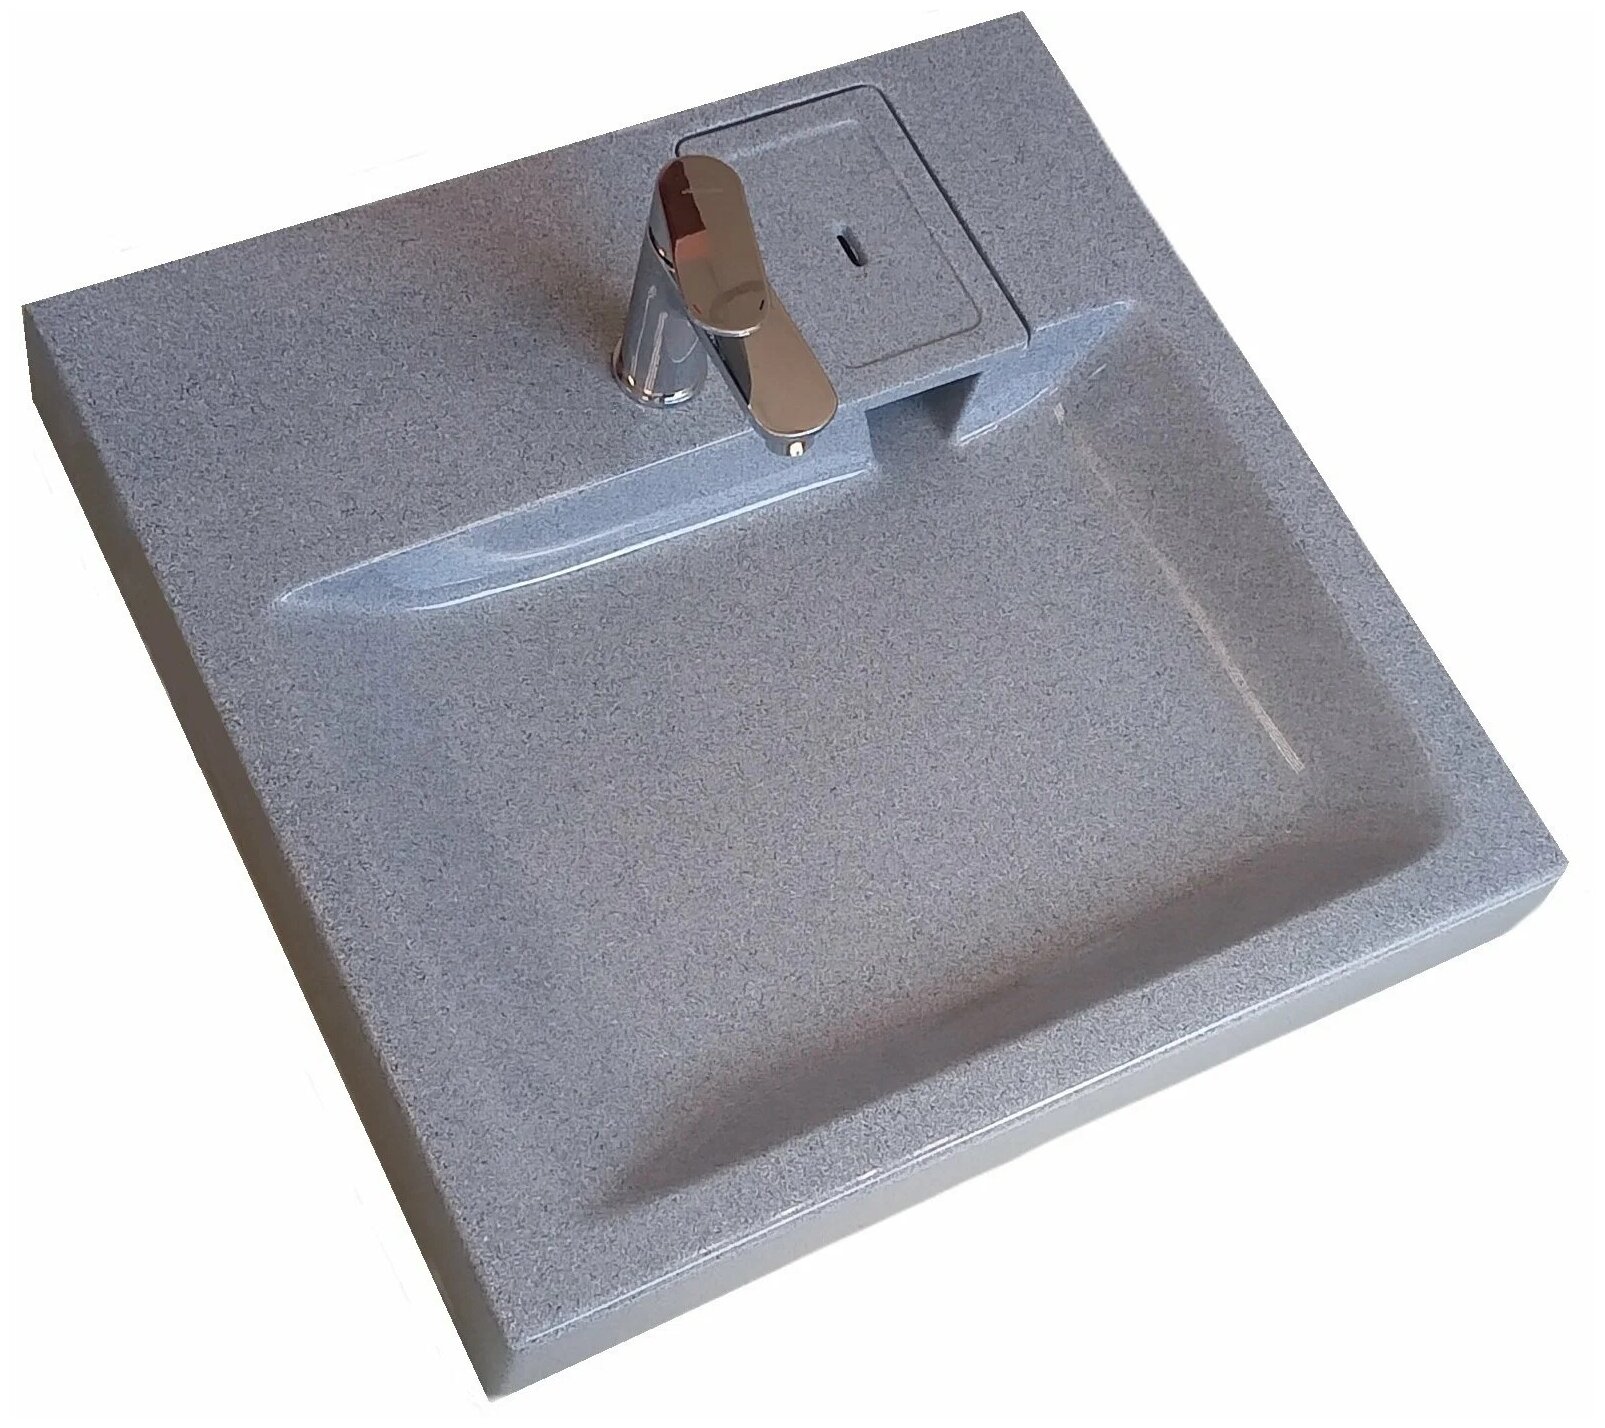 Компактная раковина для установки над стиральной машиной CAPRI MV51G серый гранит (595x585)